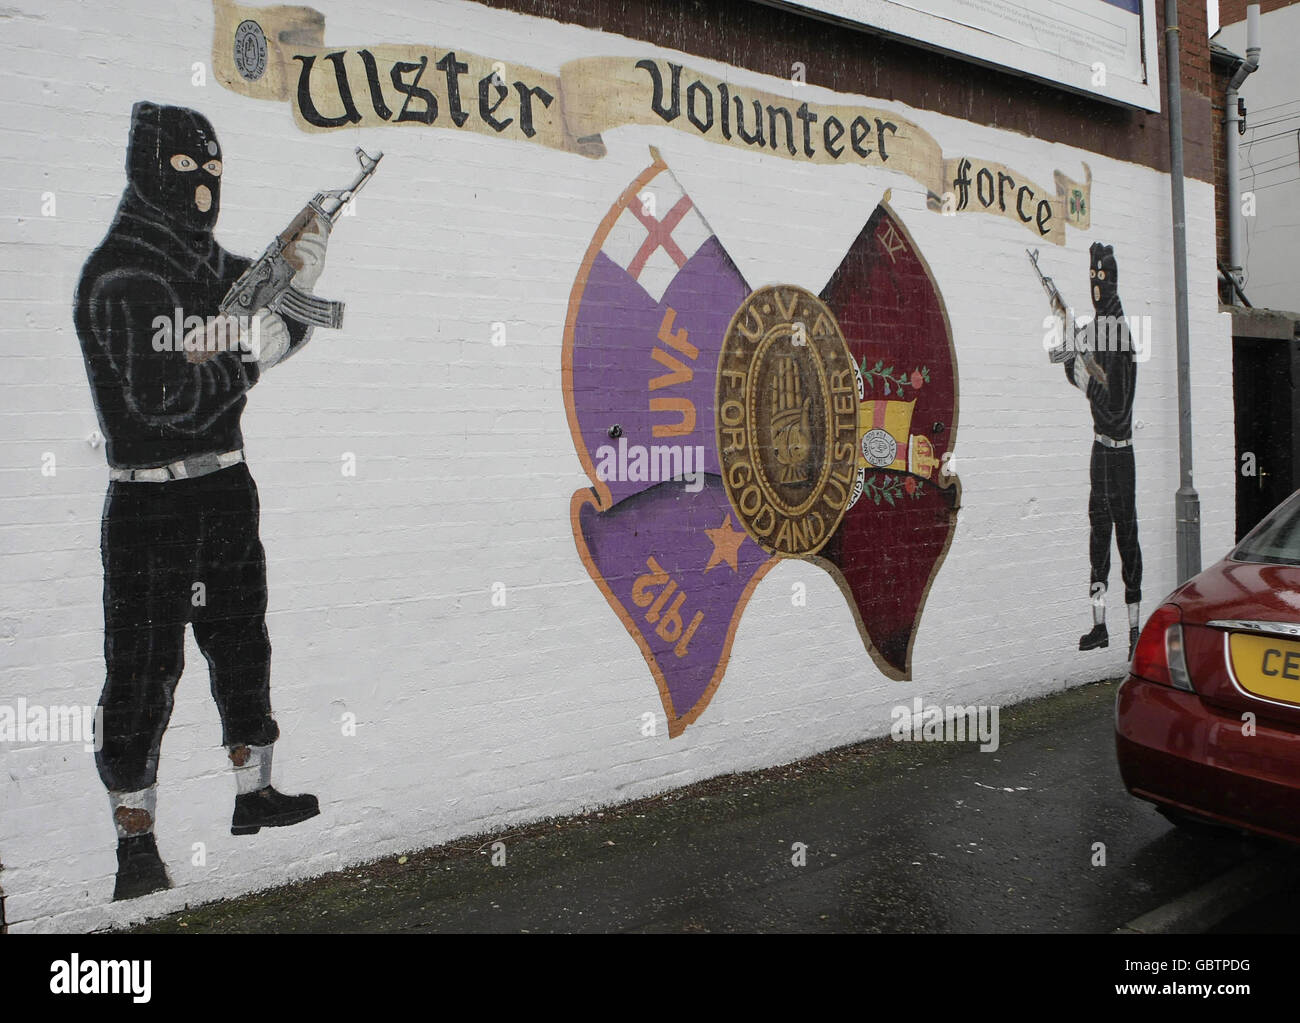 Dettaglio da un murale della Ulster Volonteer Force a East Belfast come gruppi paramilitari Loyalist in Irlanda del Nord potrebbe essere sull'orlo di smantellare le loro armi, è stato dichiarato oggi. Foto Stock